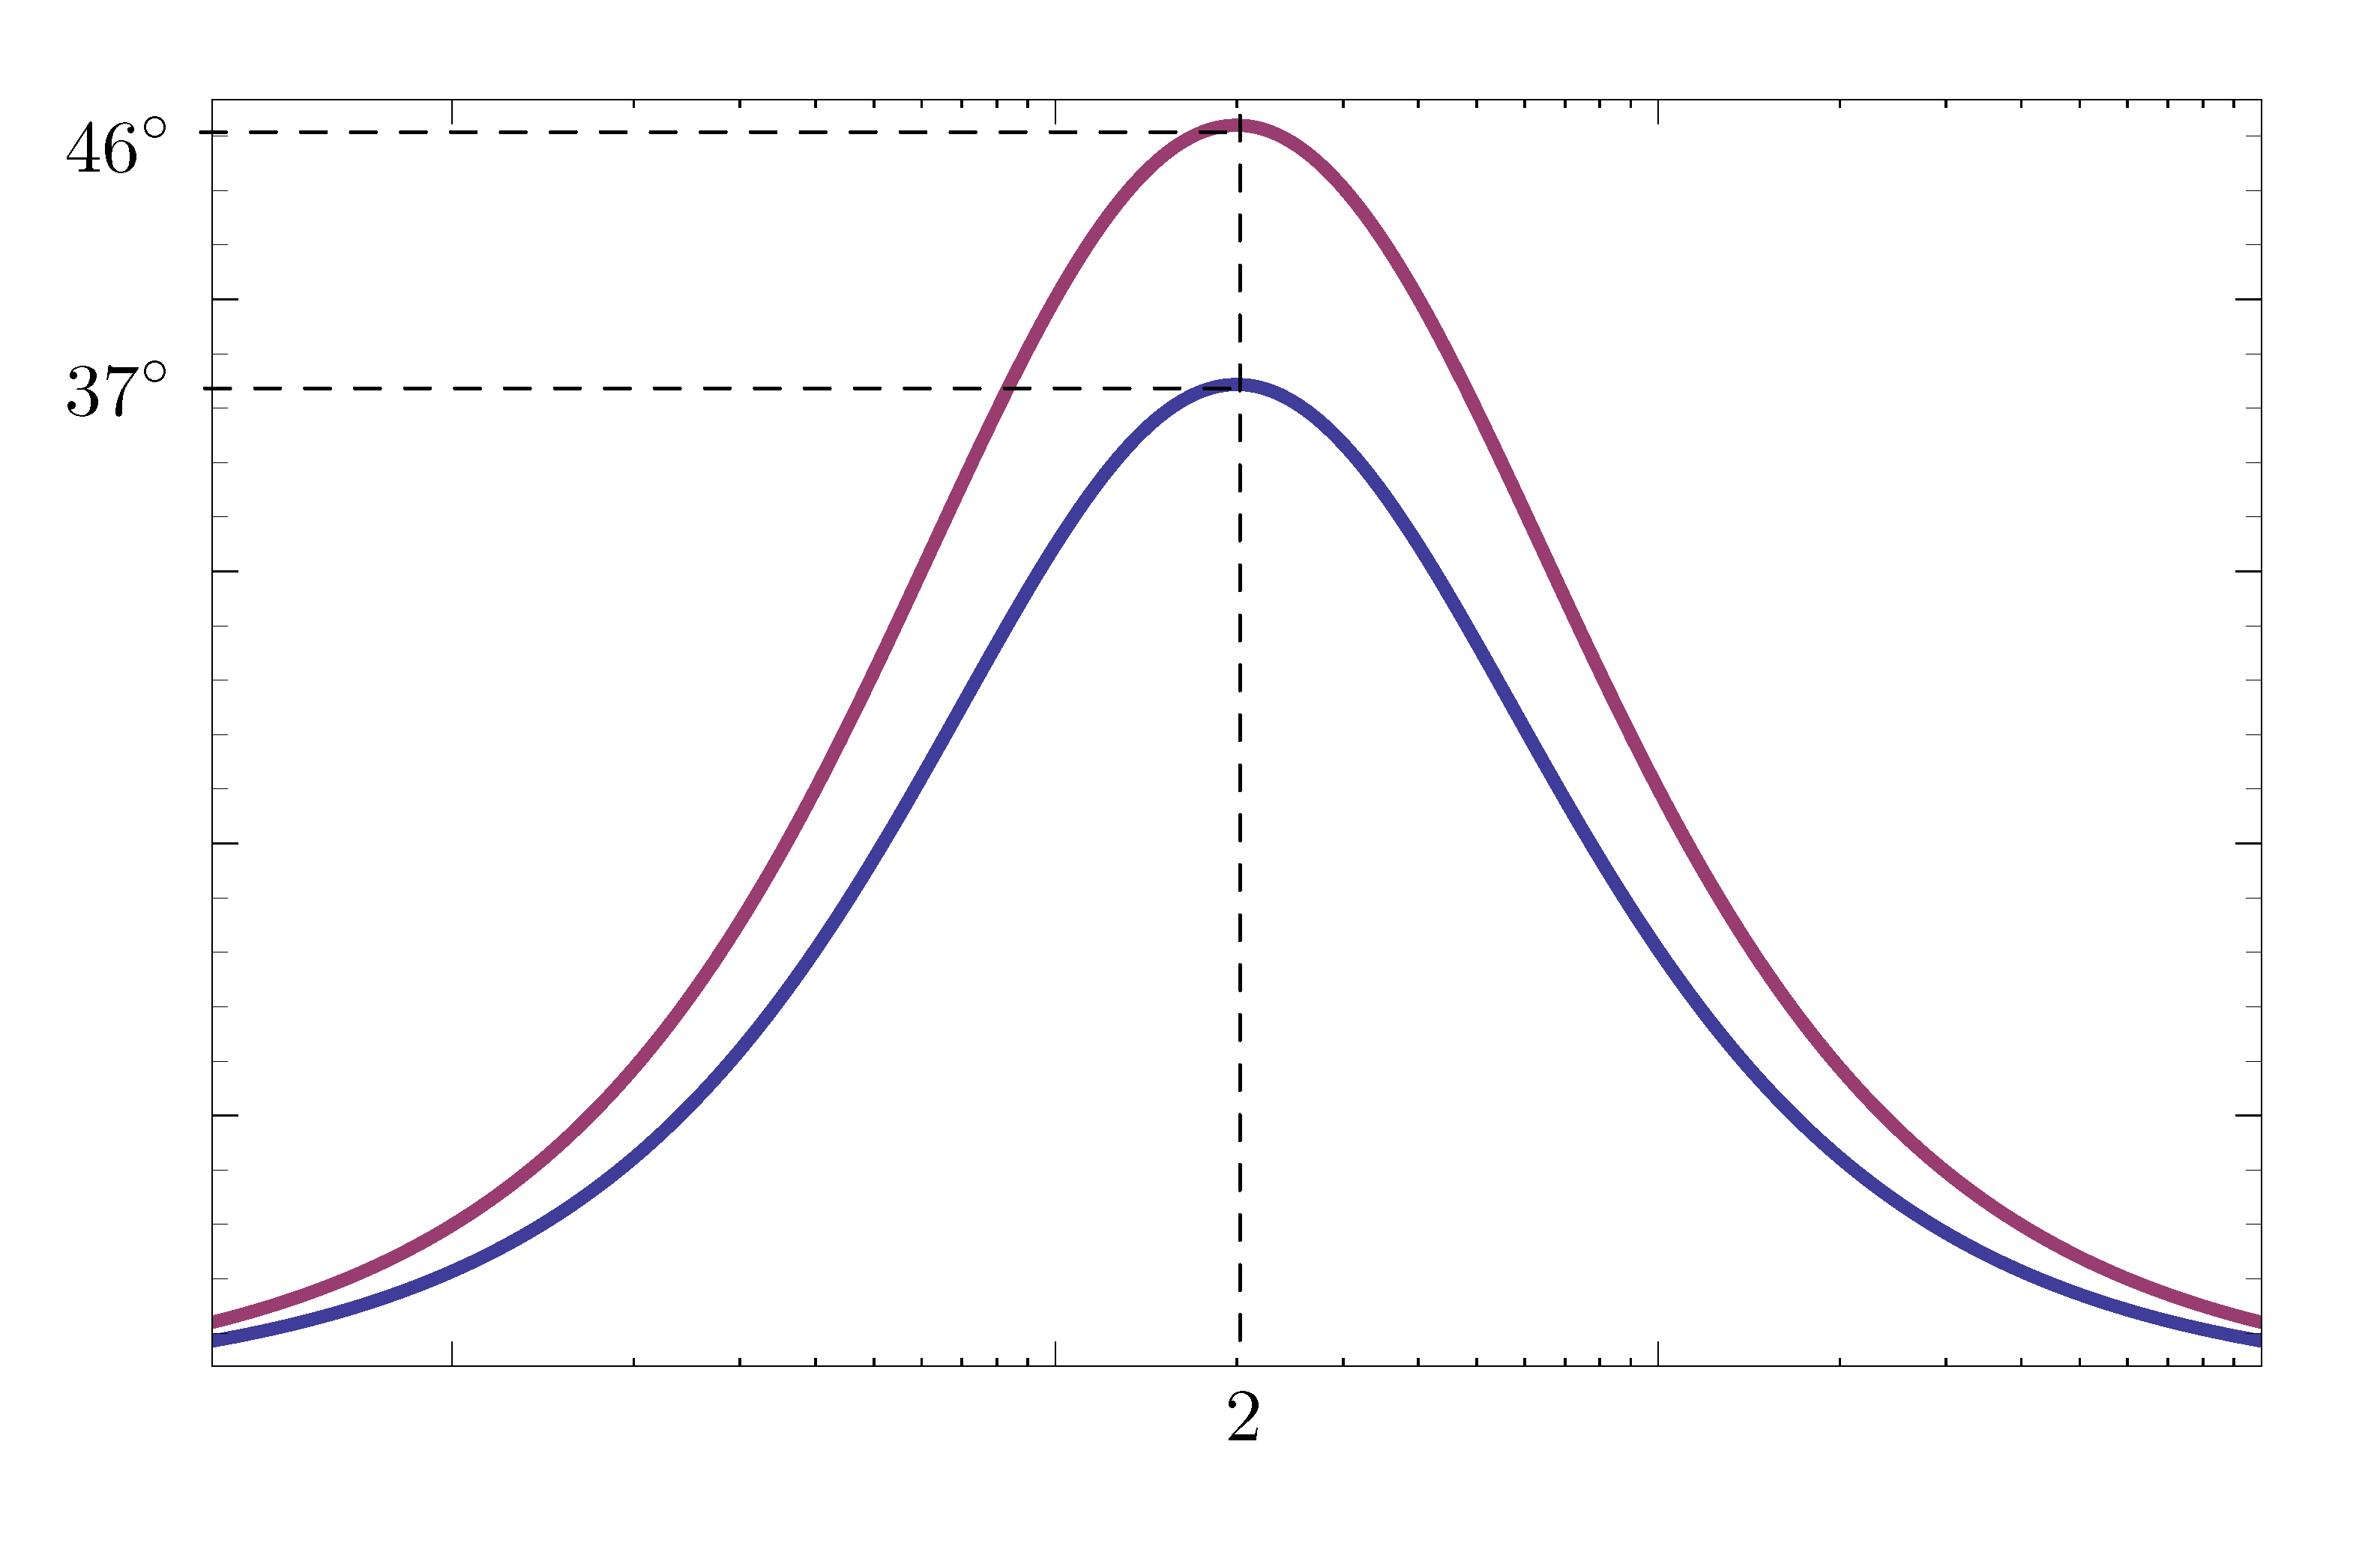 overlaid phase plot D(s)